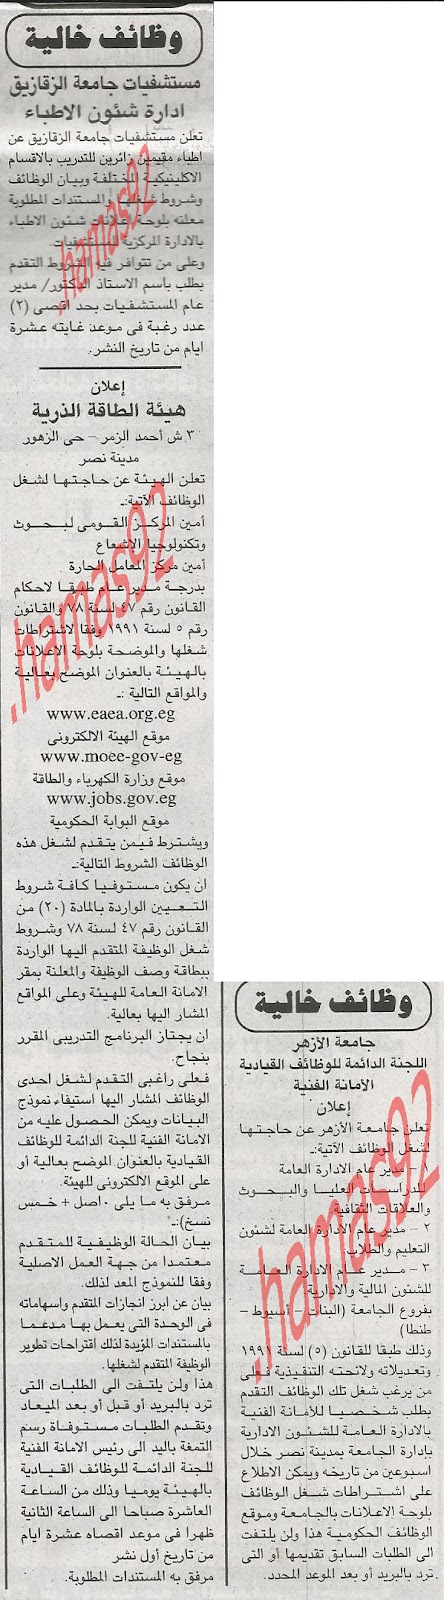 عمل حكومى فى مصر الاربعاء 8 اغسطس 2012  %D8%A7%D9%84%D8%AC%D9%85%D9%87%D9%88%D8%B1%D9%8A%D8%A9